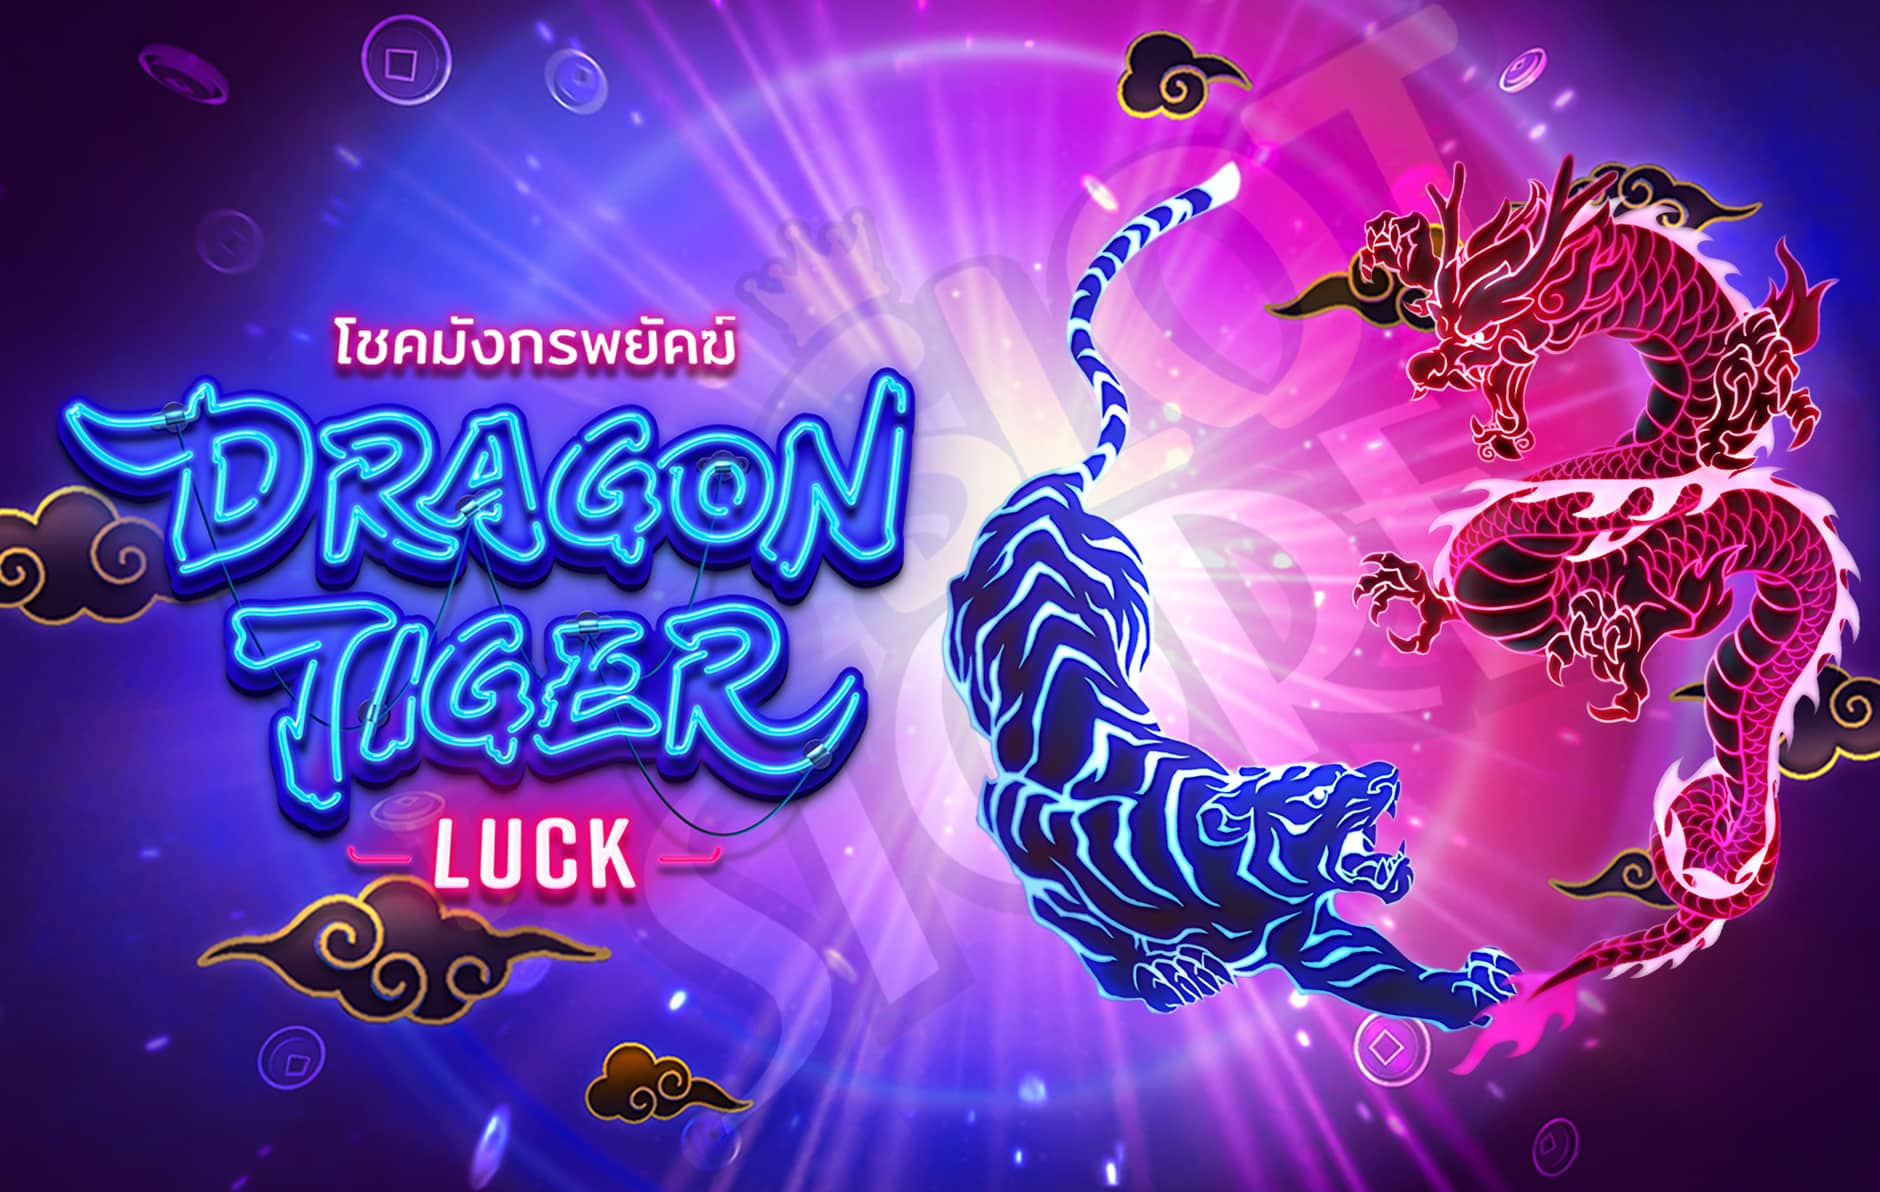 ทดลองเล่น Dragon Tiger Luck